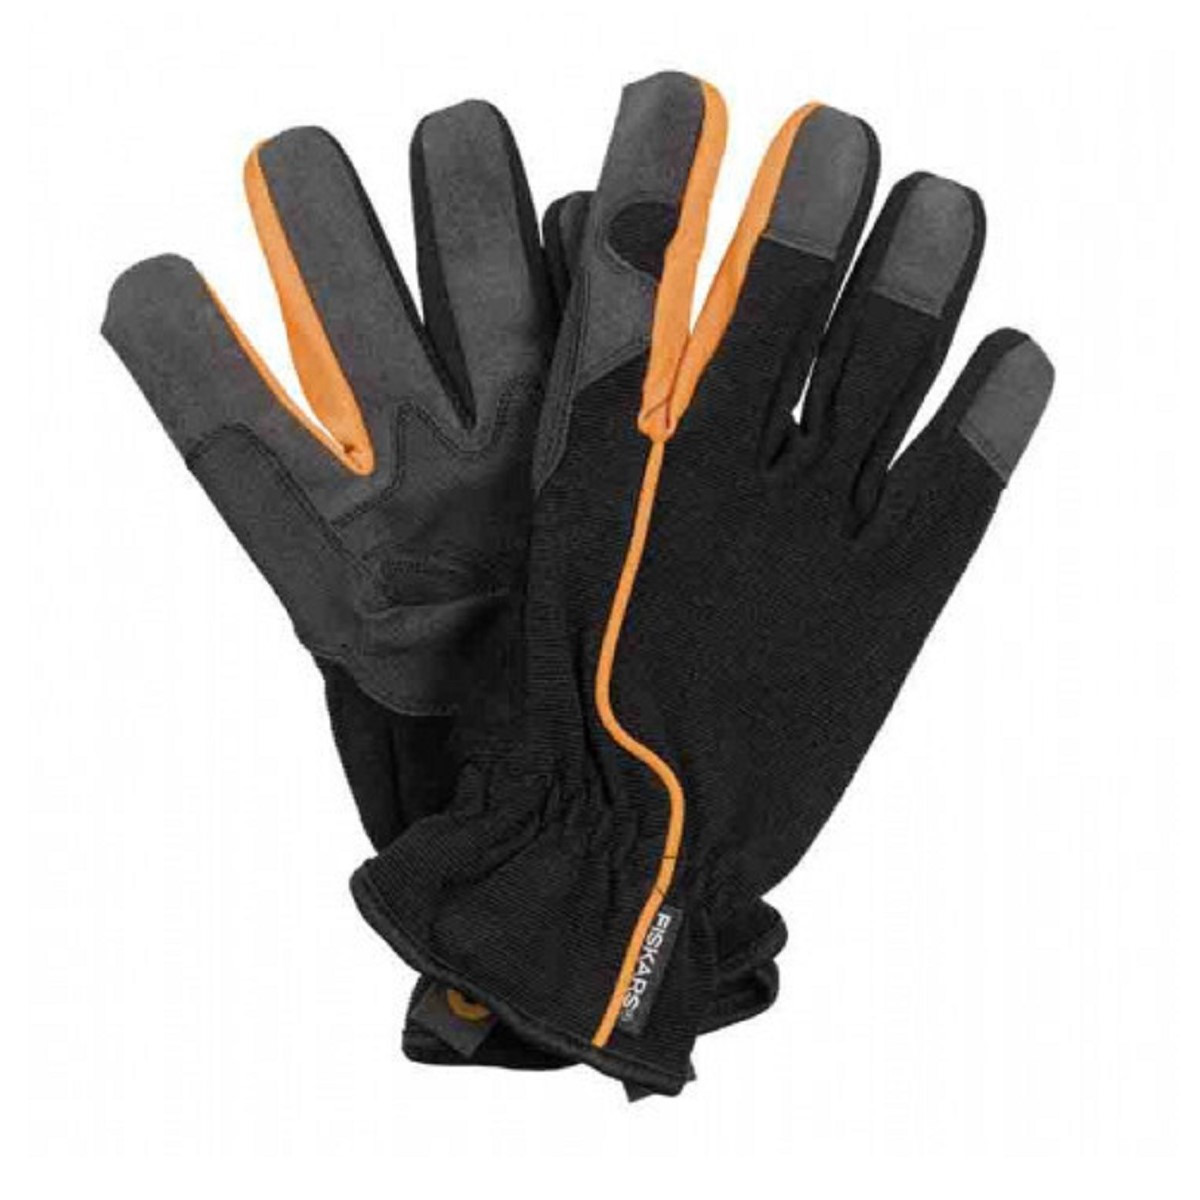 Pracovní rukavice FISKARS - velikost 10 - 1 ks